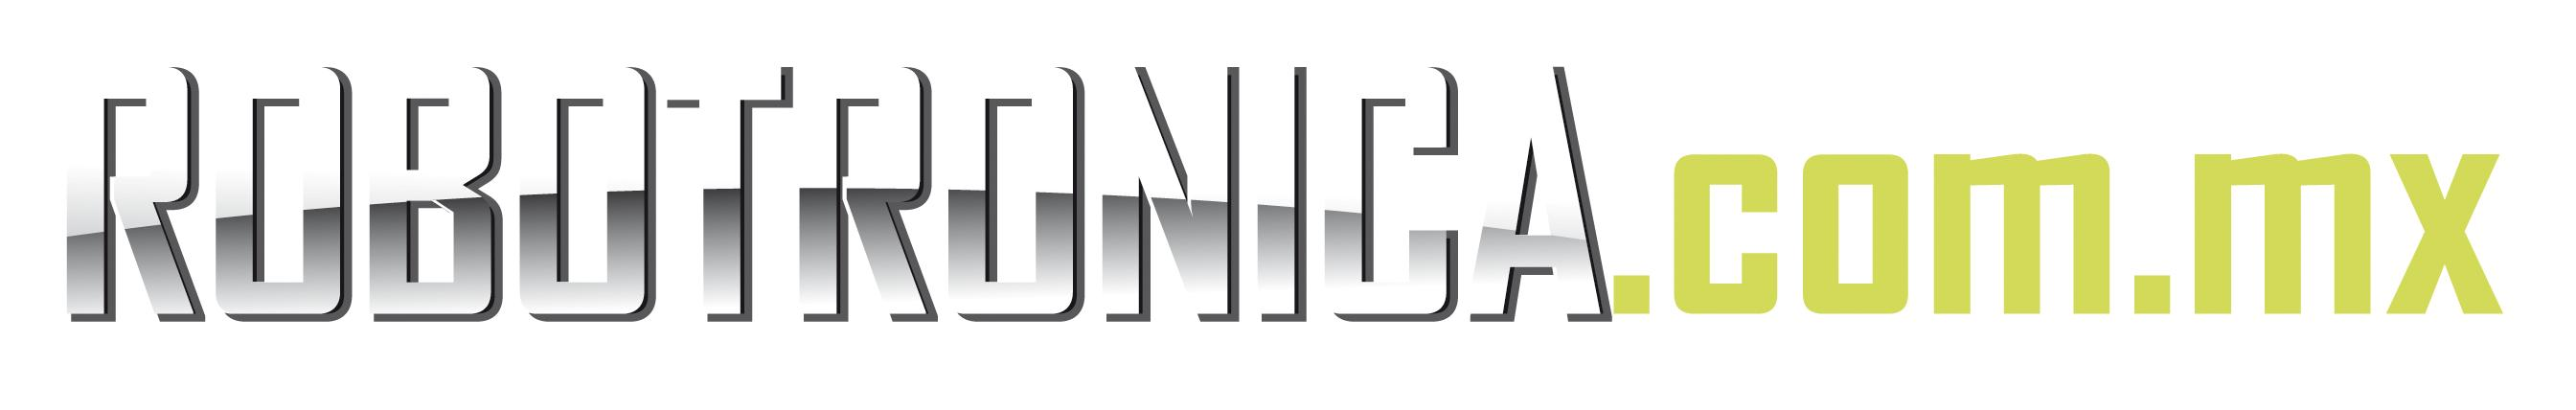 Robotronica.com.mx Logo